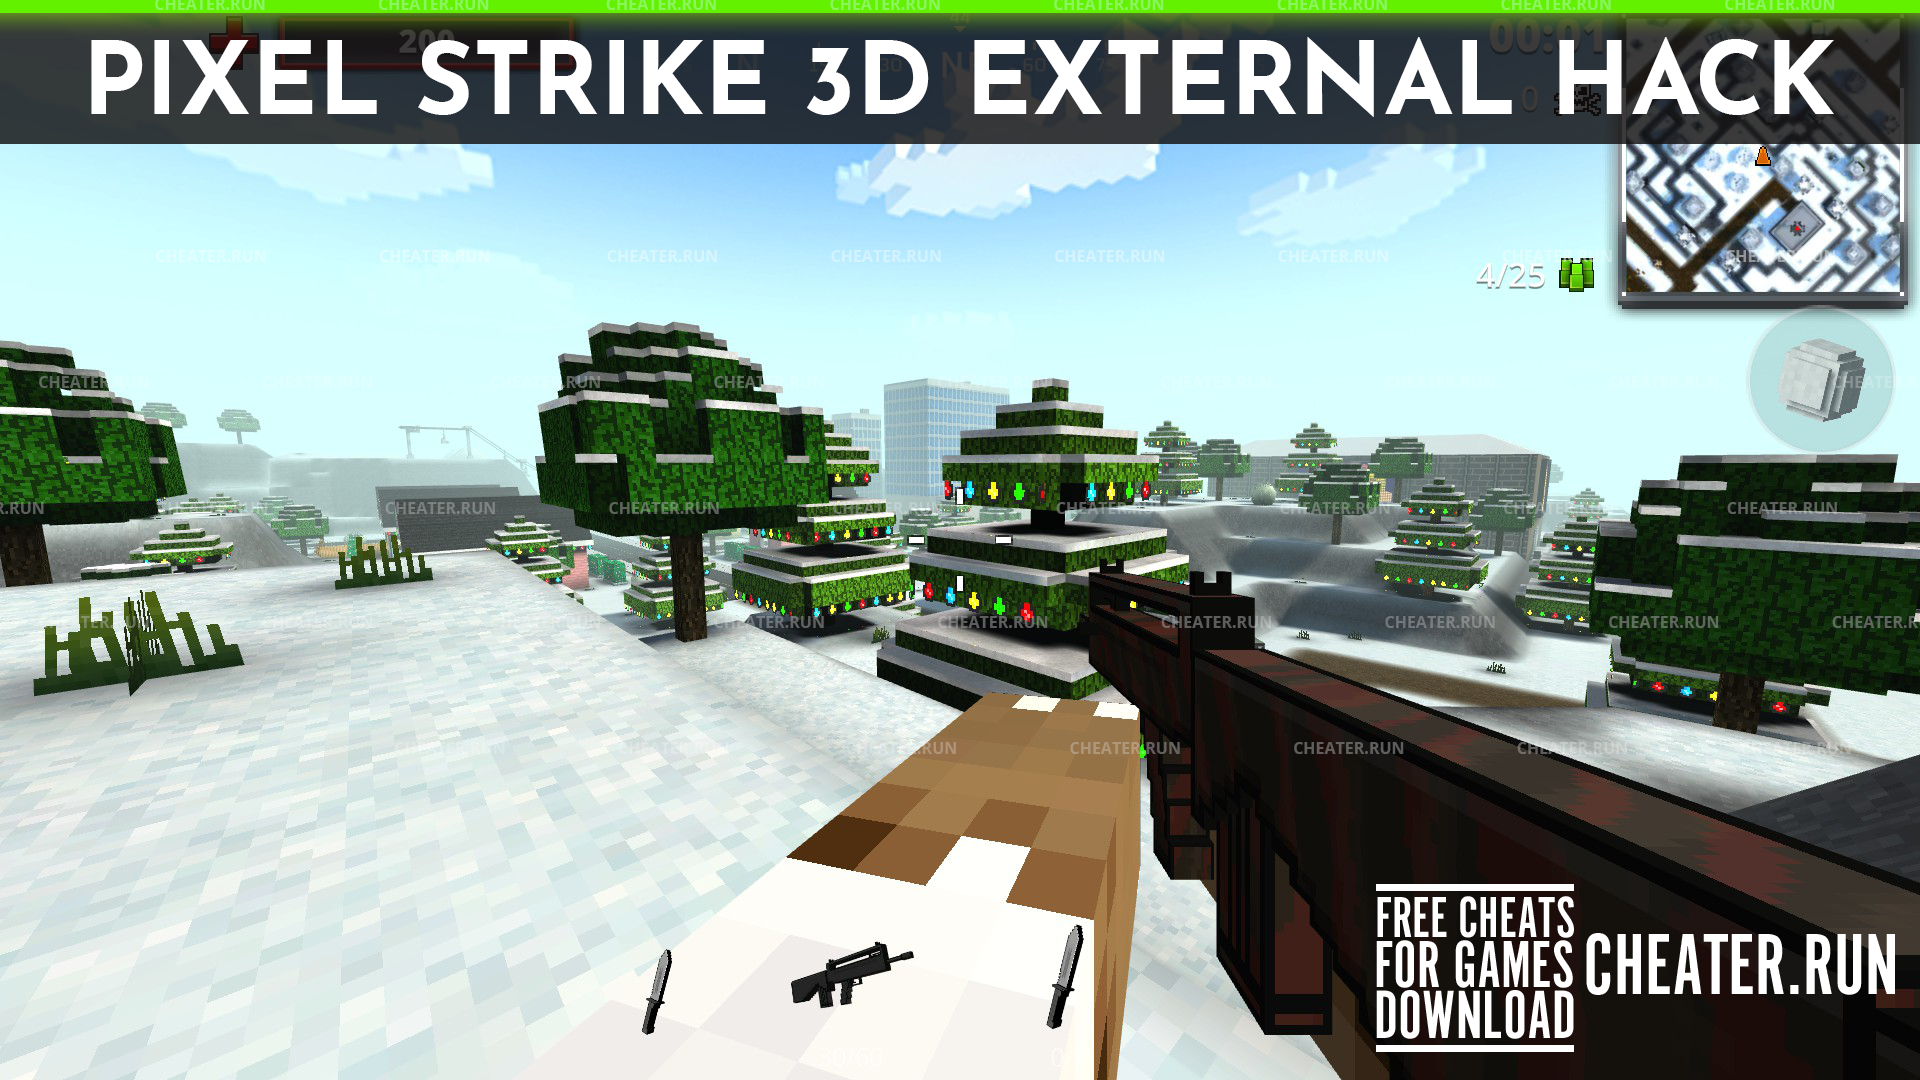 Hack Pixel Strike 3d External Steam 2021 Version - roblox last strike hacks